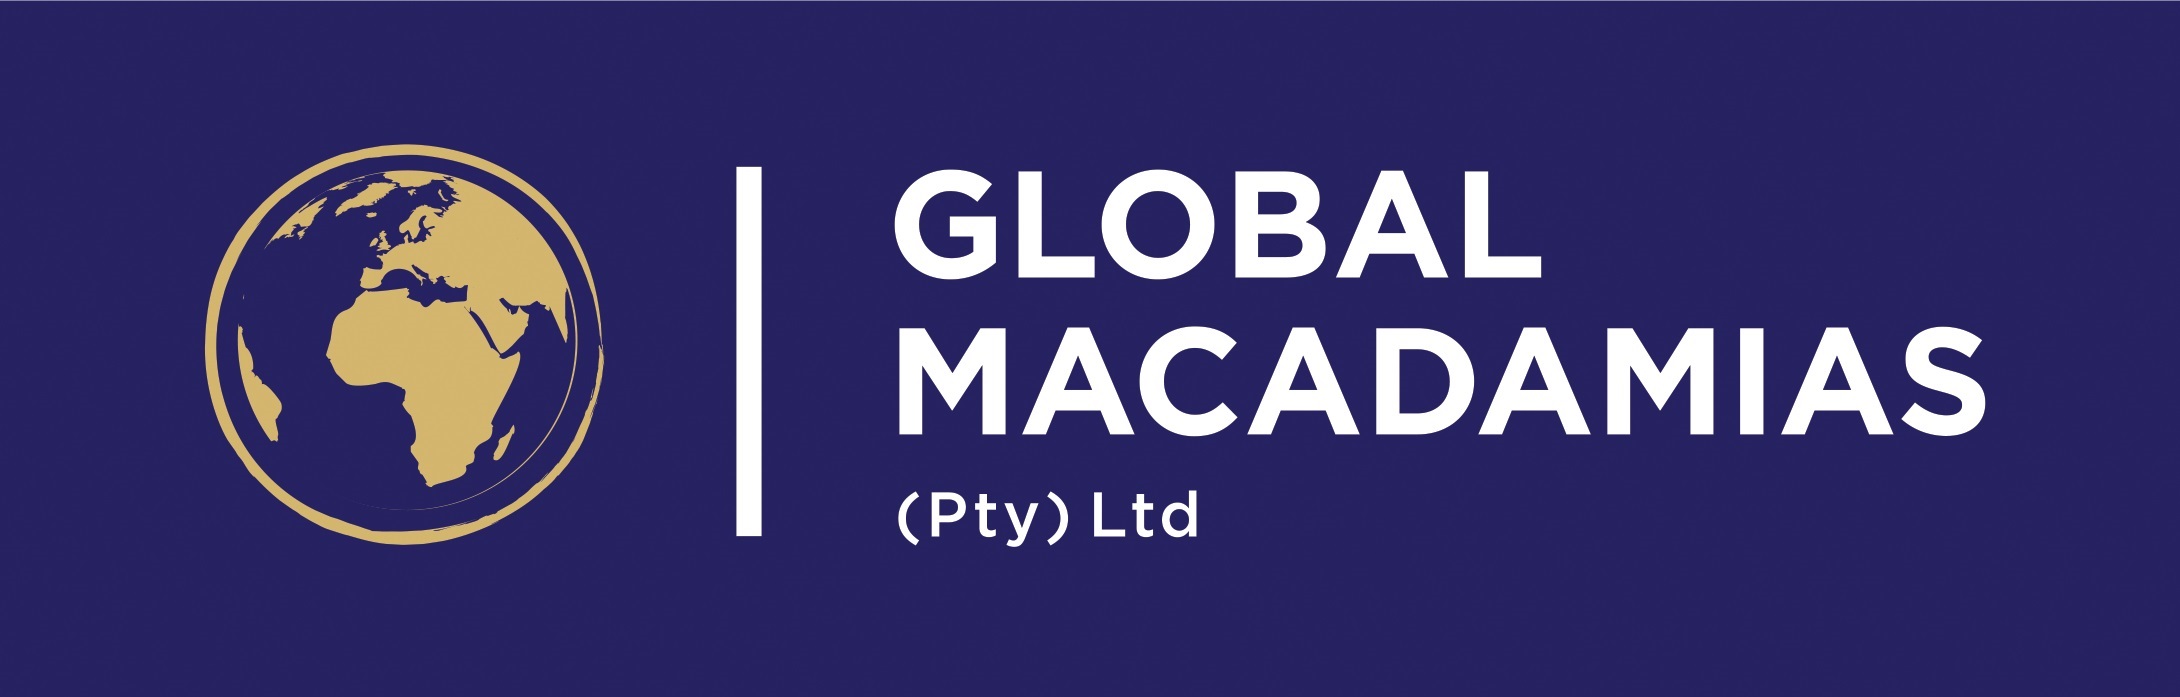 Global Macadamias (Pty) Ltd Logo